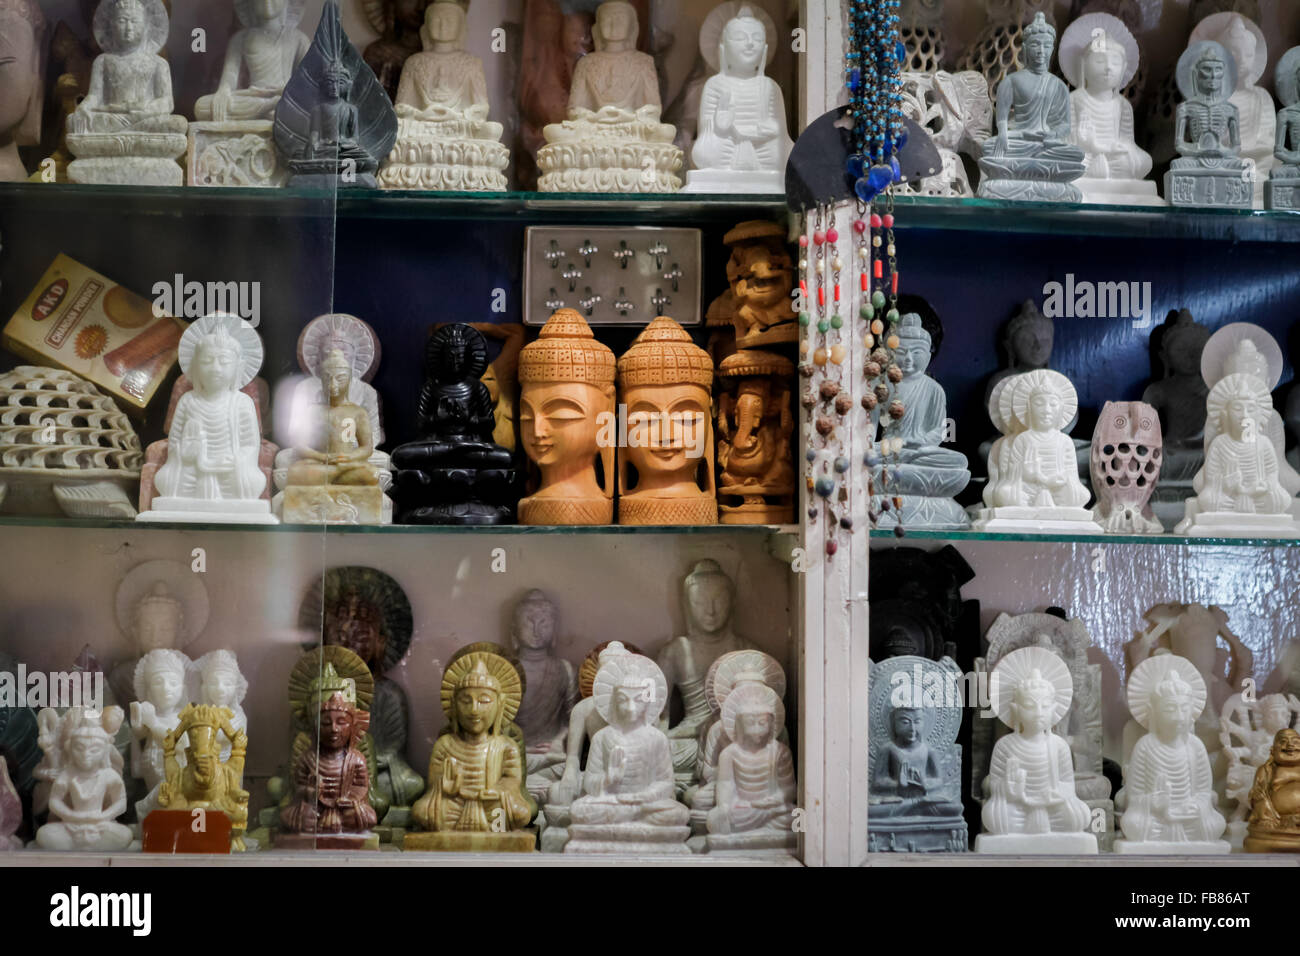 Buddhistische Skulpturen in einem Souvenirladen; eine Tourismuseinrichtung in der alten buddhistischen Universitätsanlage in Nalanda, Bihar, Indien. Stockfoto